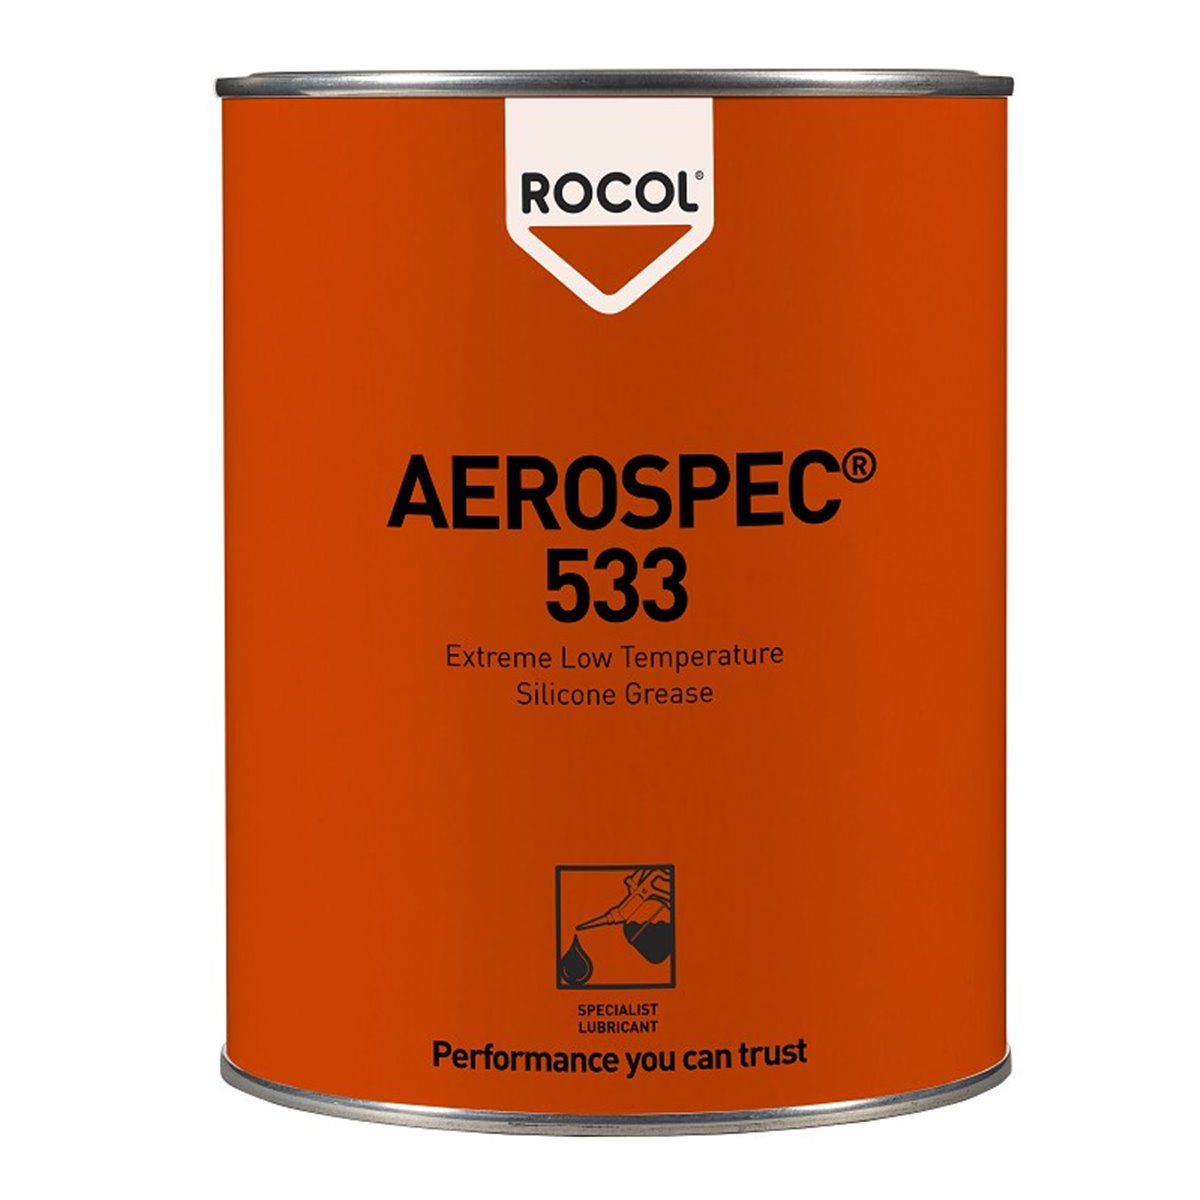 AEROSPEC 533 Rocol 1kg RS16644